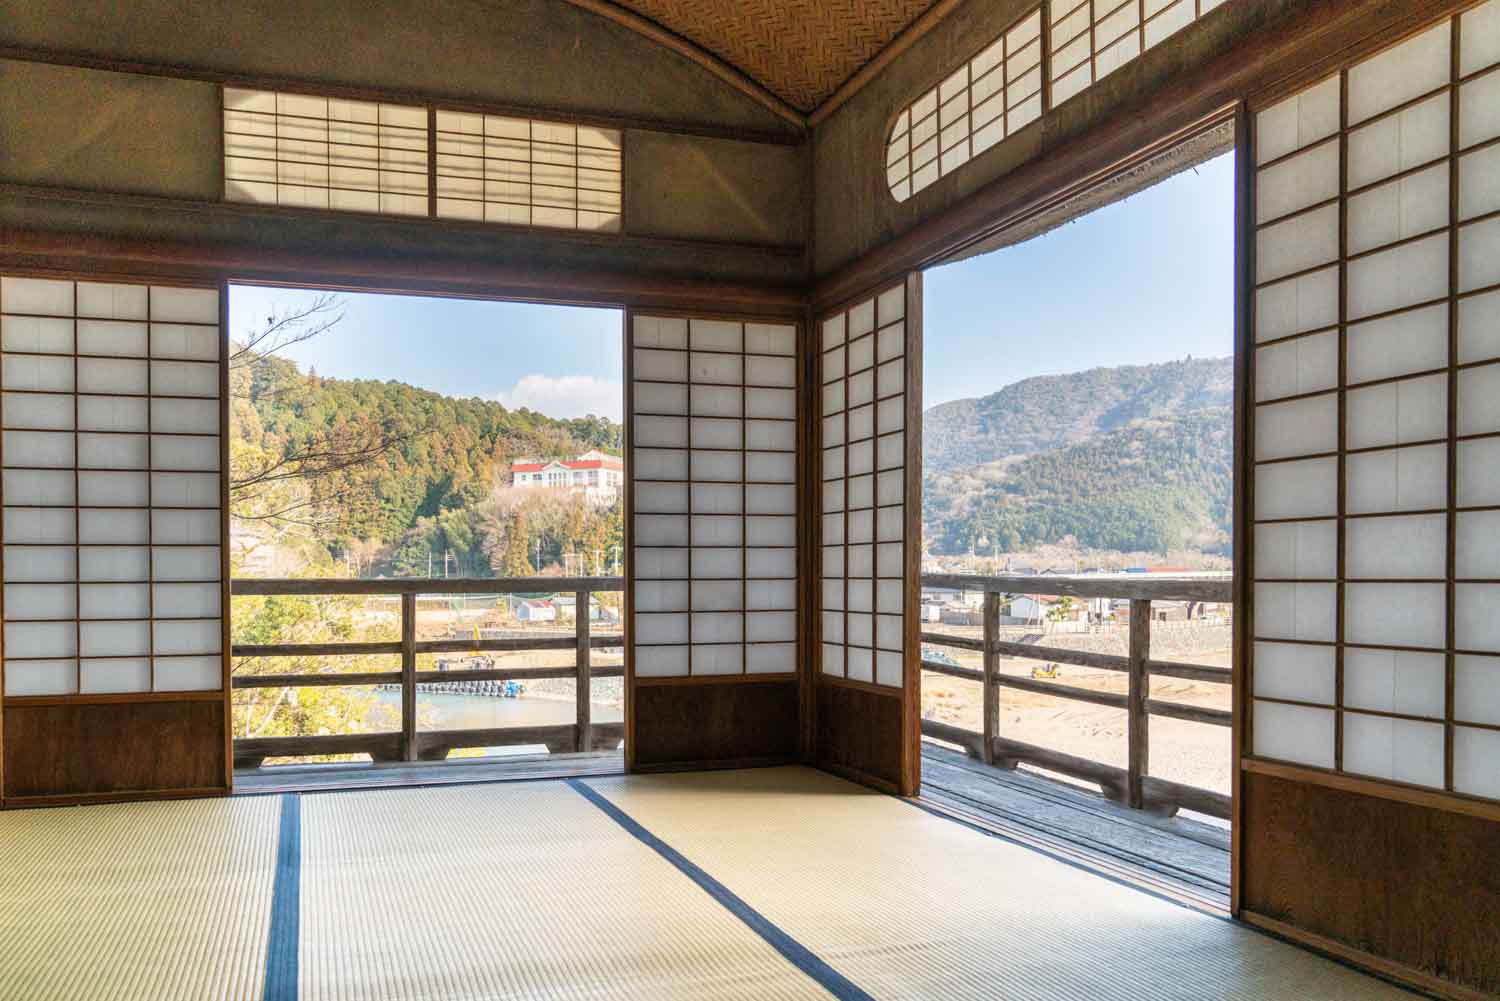 Tatami-Raum in einem japanischen Teehaus.